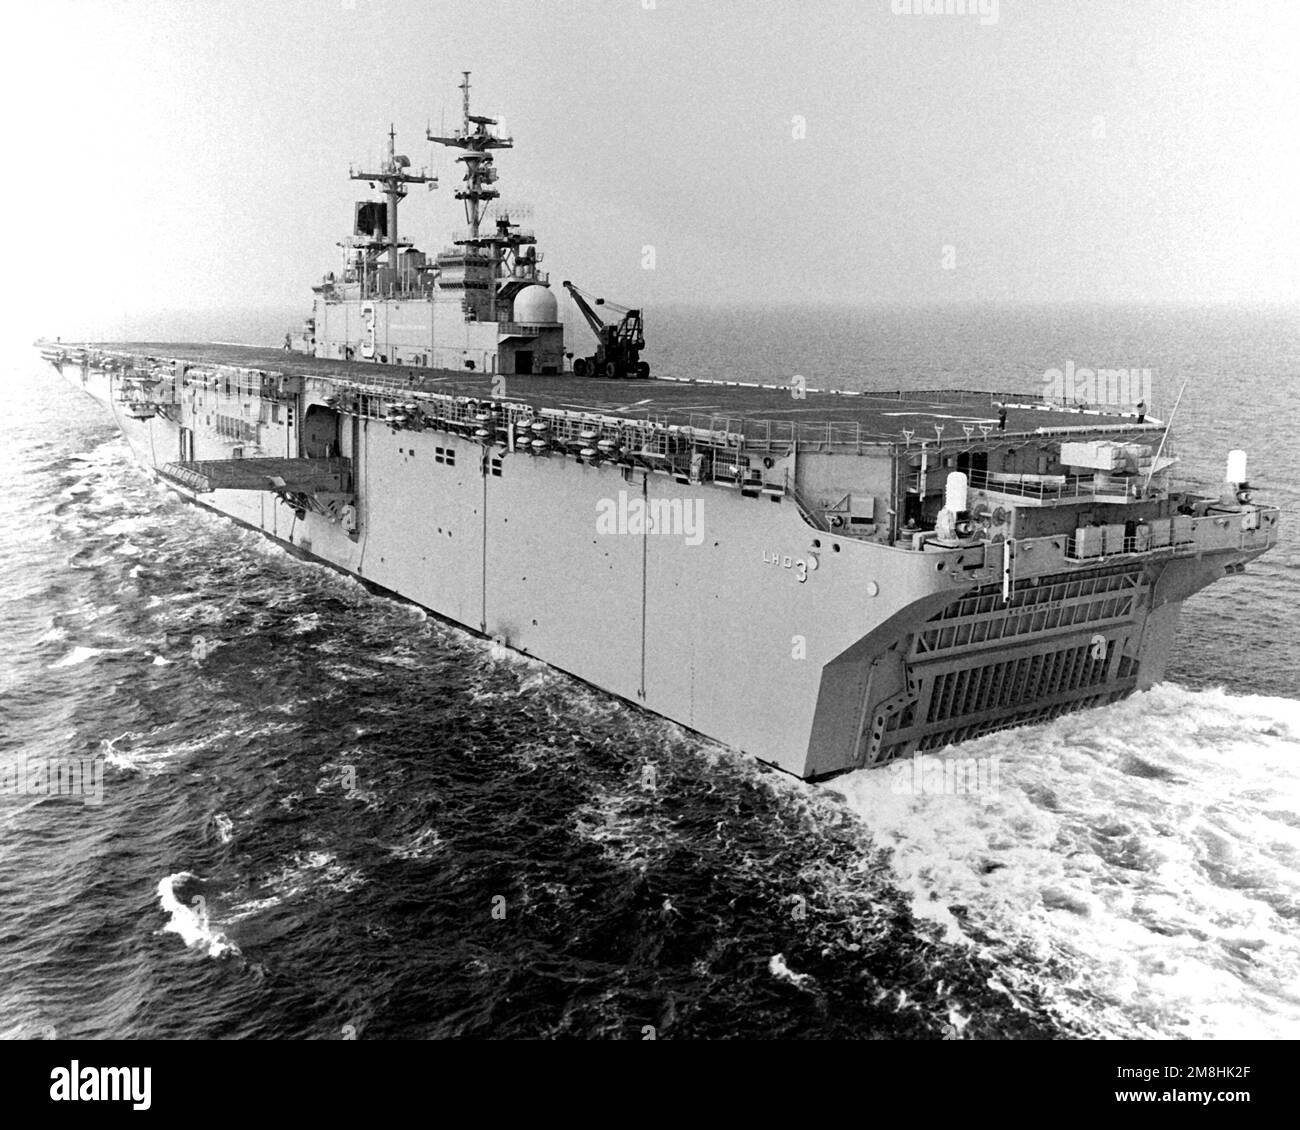 Vue du quartier portuaire du navire d'assaut amphibie USS KEARSARGE (LHD-3) en cours pendant les essais en mer. Pays: Golfe du Mexique Banque D'Images